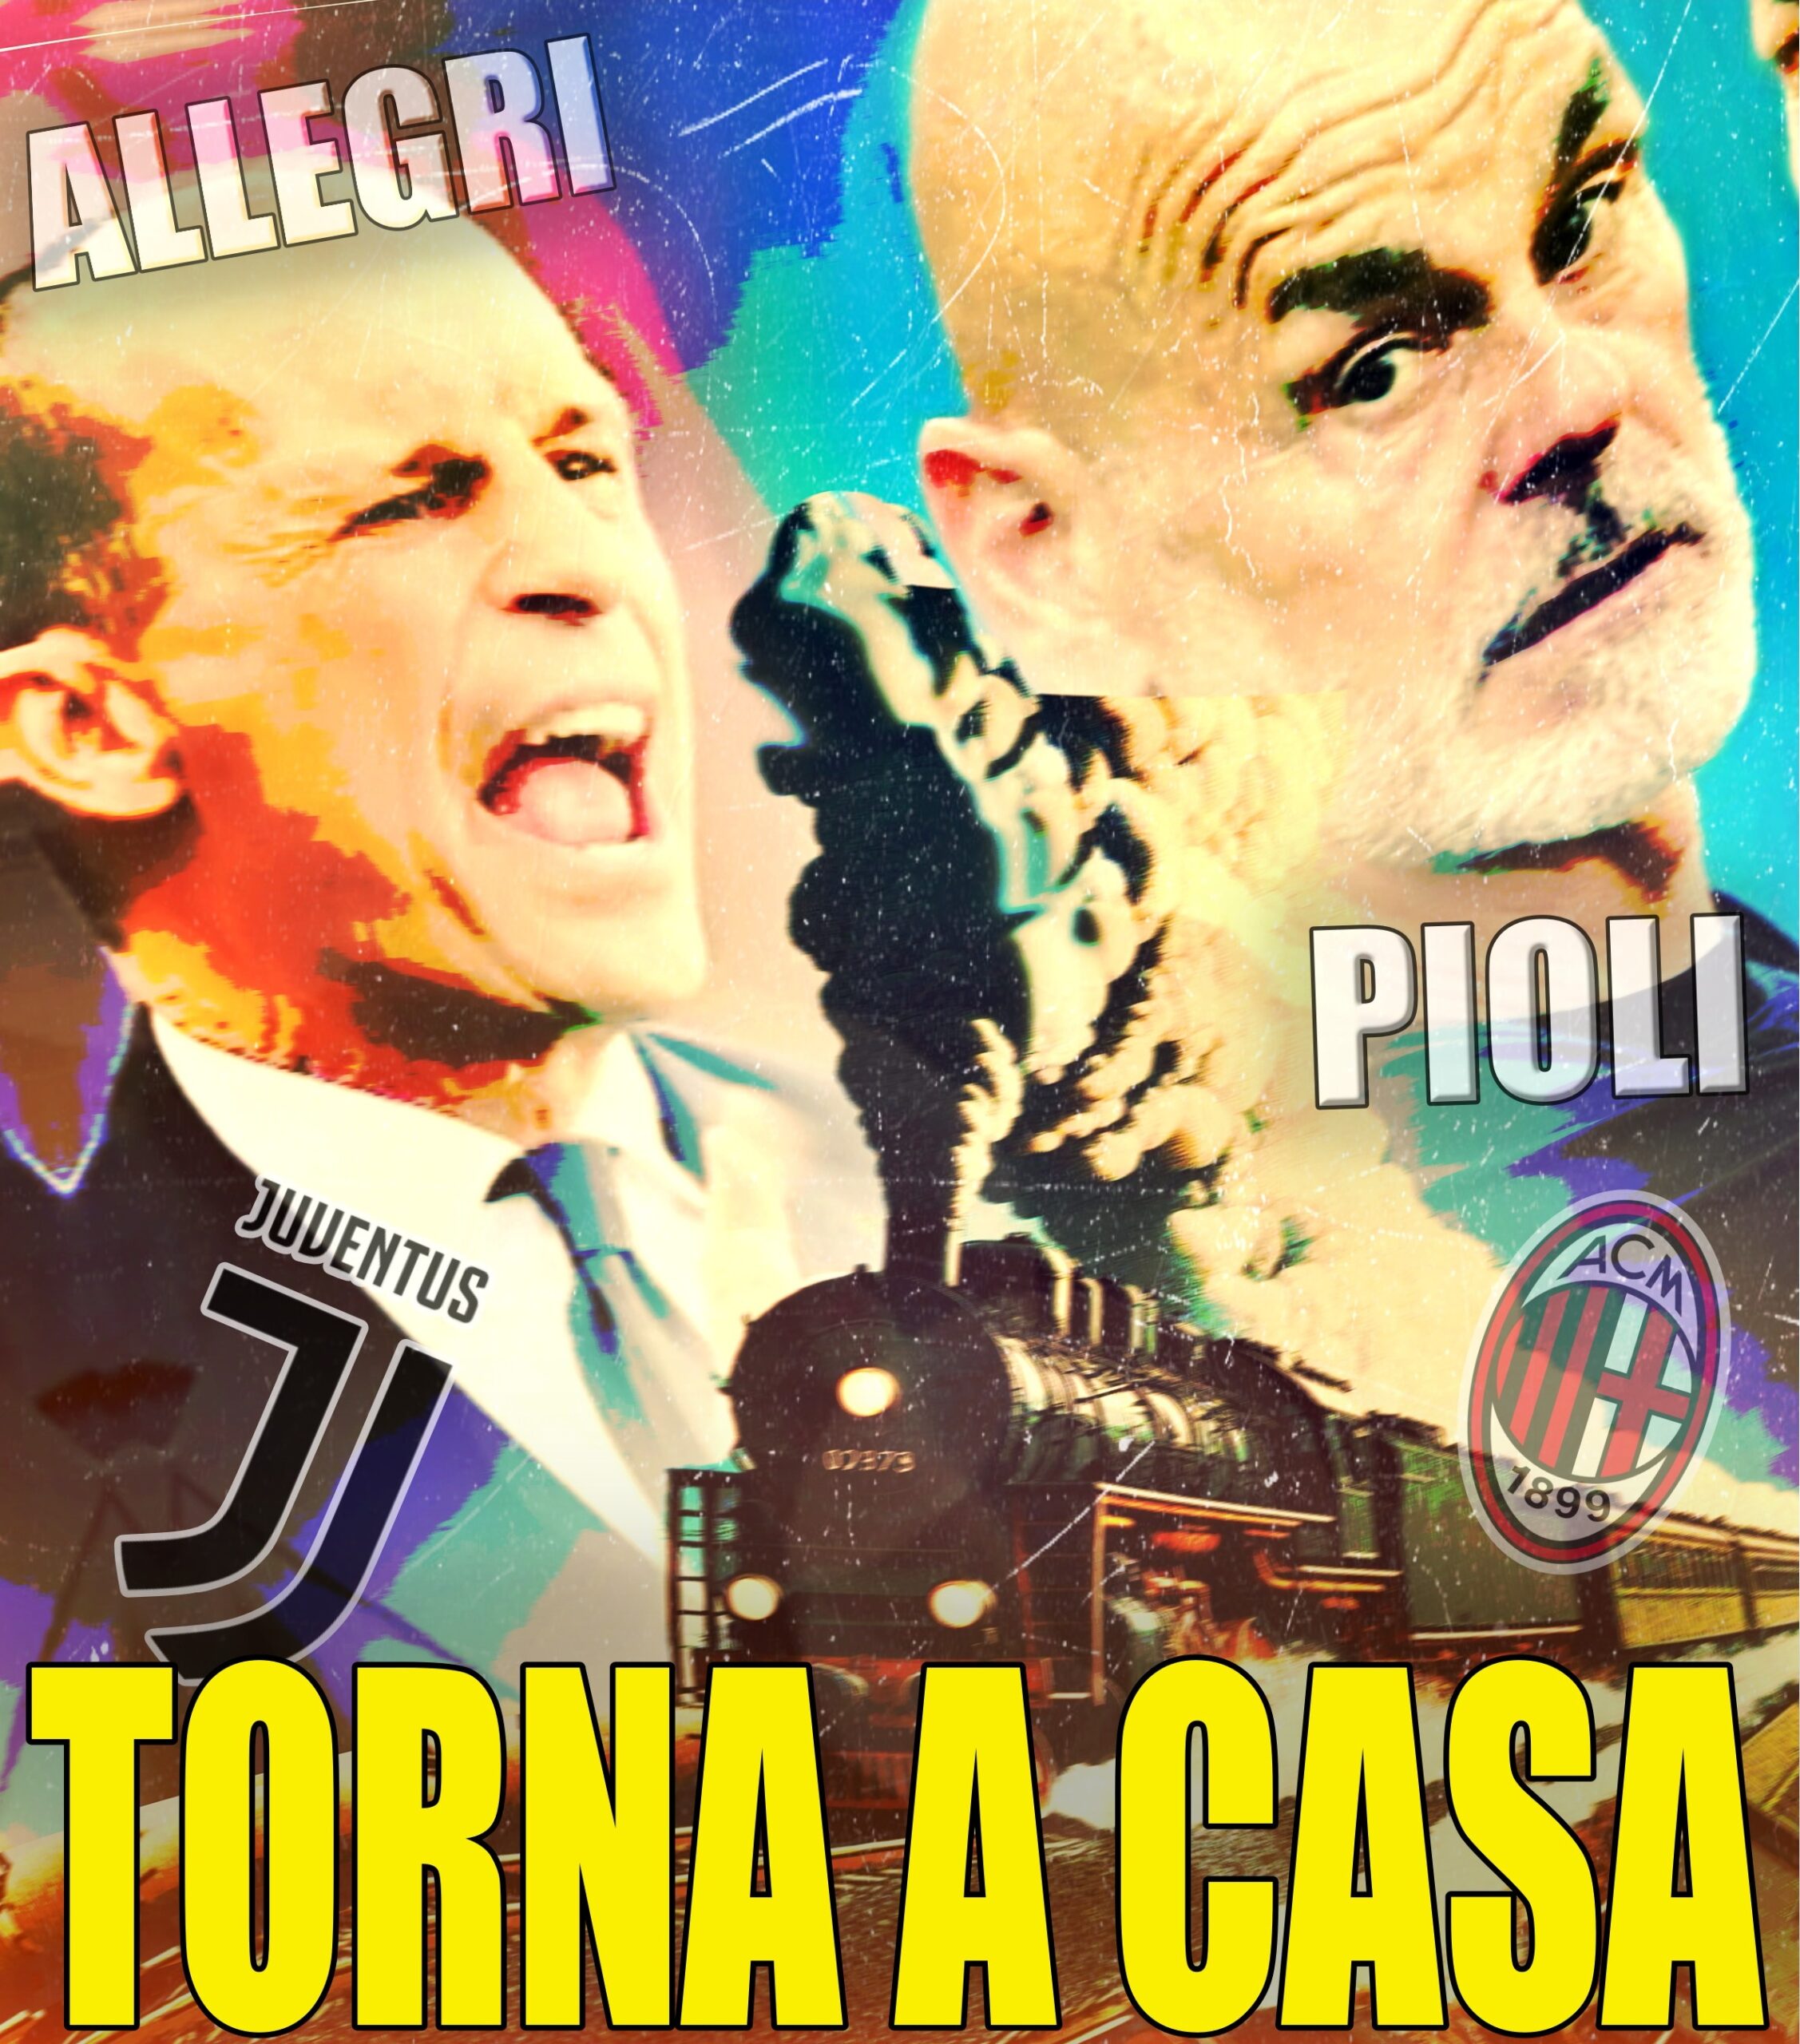 Calciomercato, Massimiliano Allegri alla Juventus e Stefano Pioli al Milan, due storie ormai alla fine. Si va verso il cambio di panchina degli allenatori